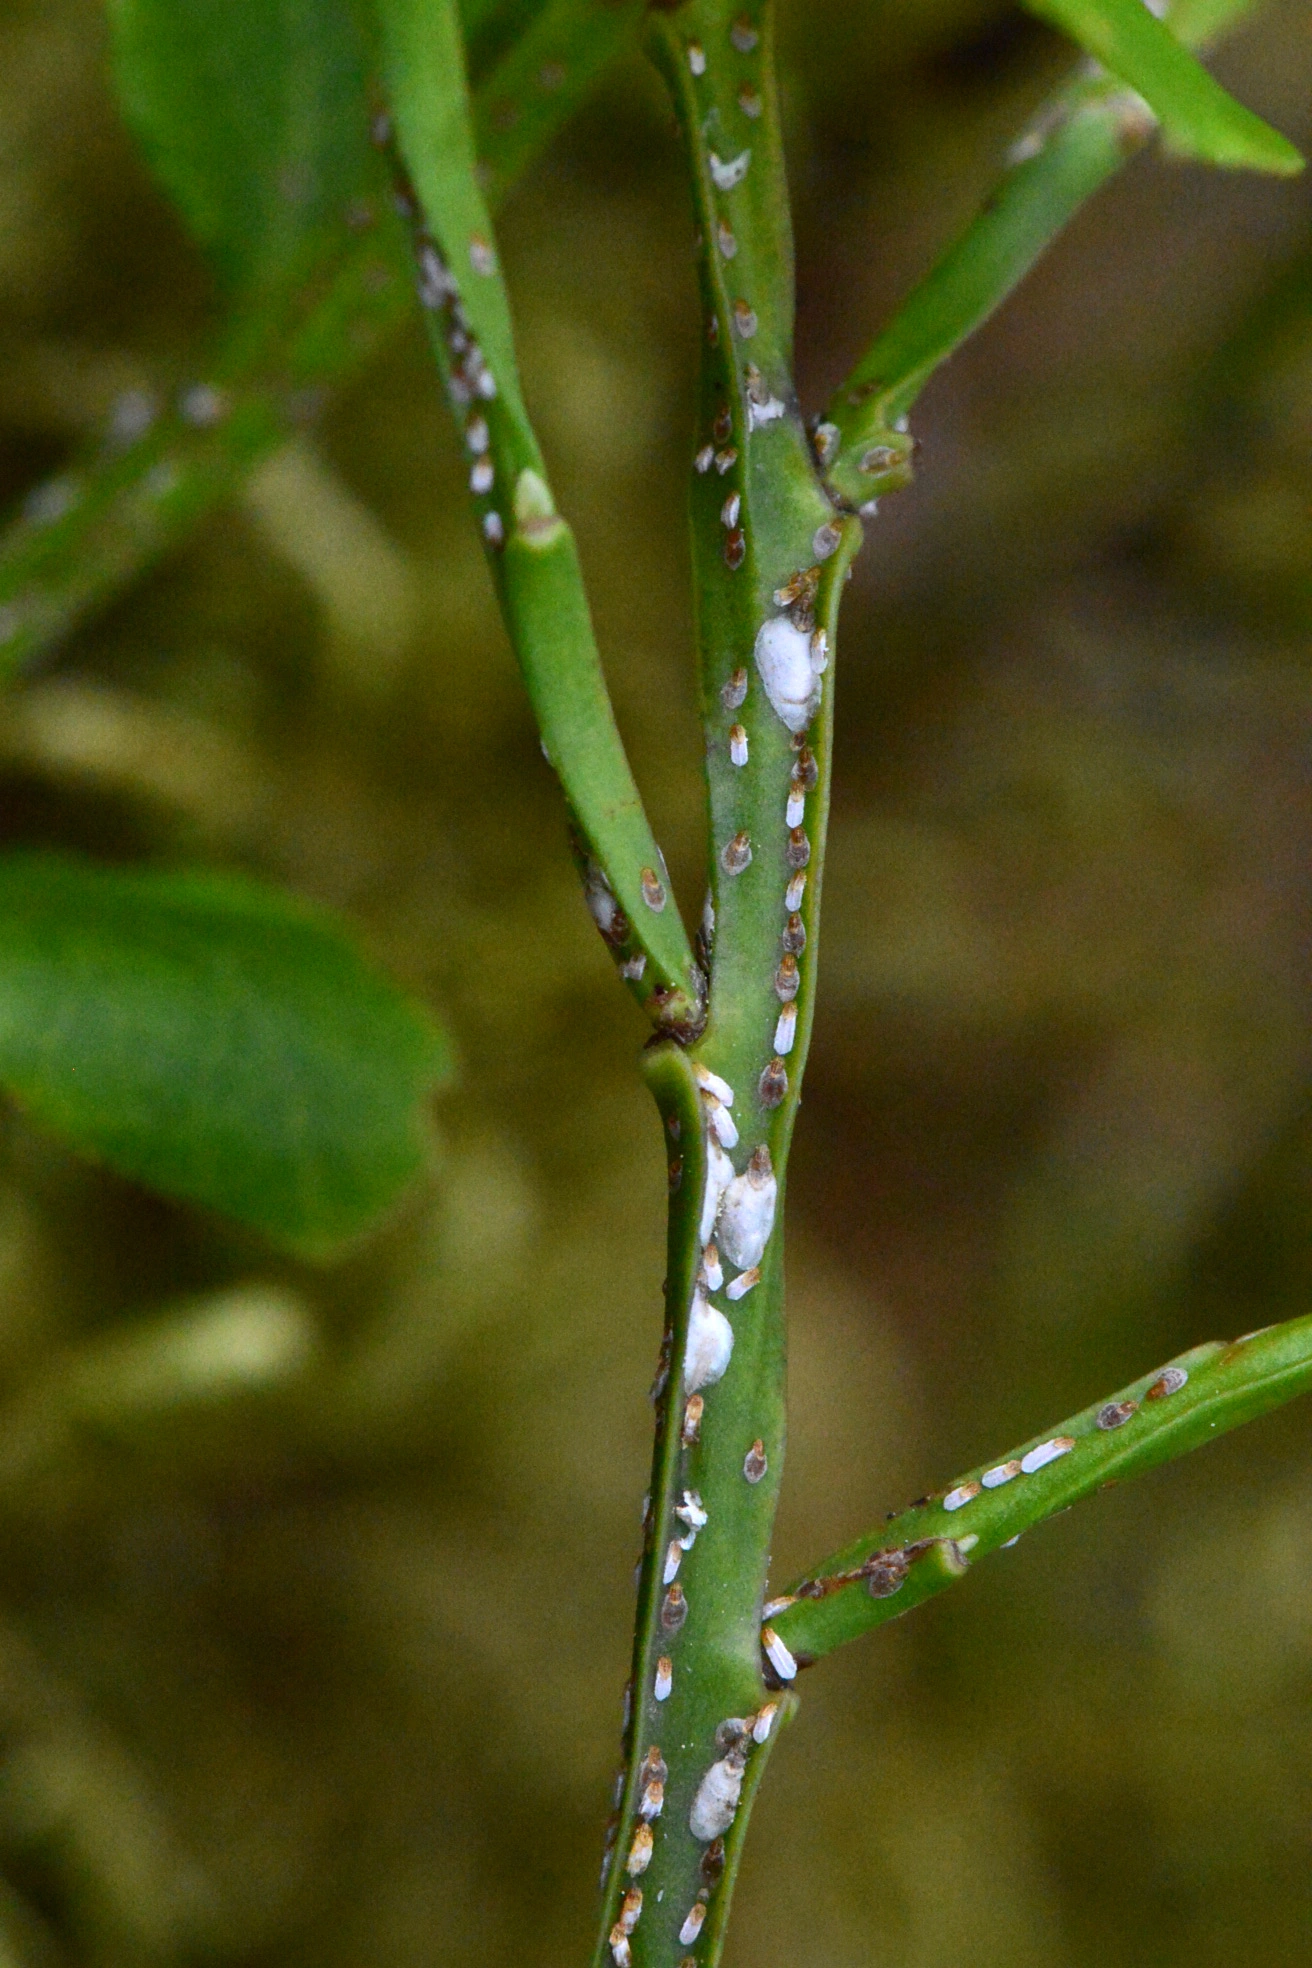 Plantelus: Chionaspis salicis.